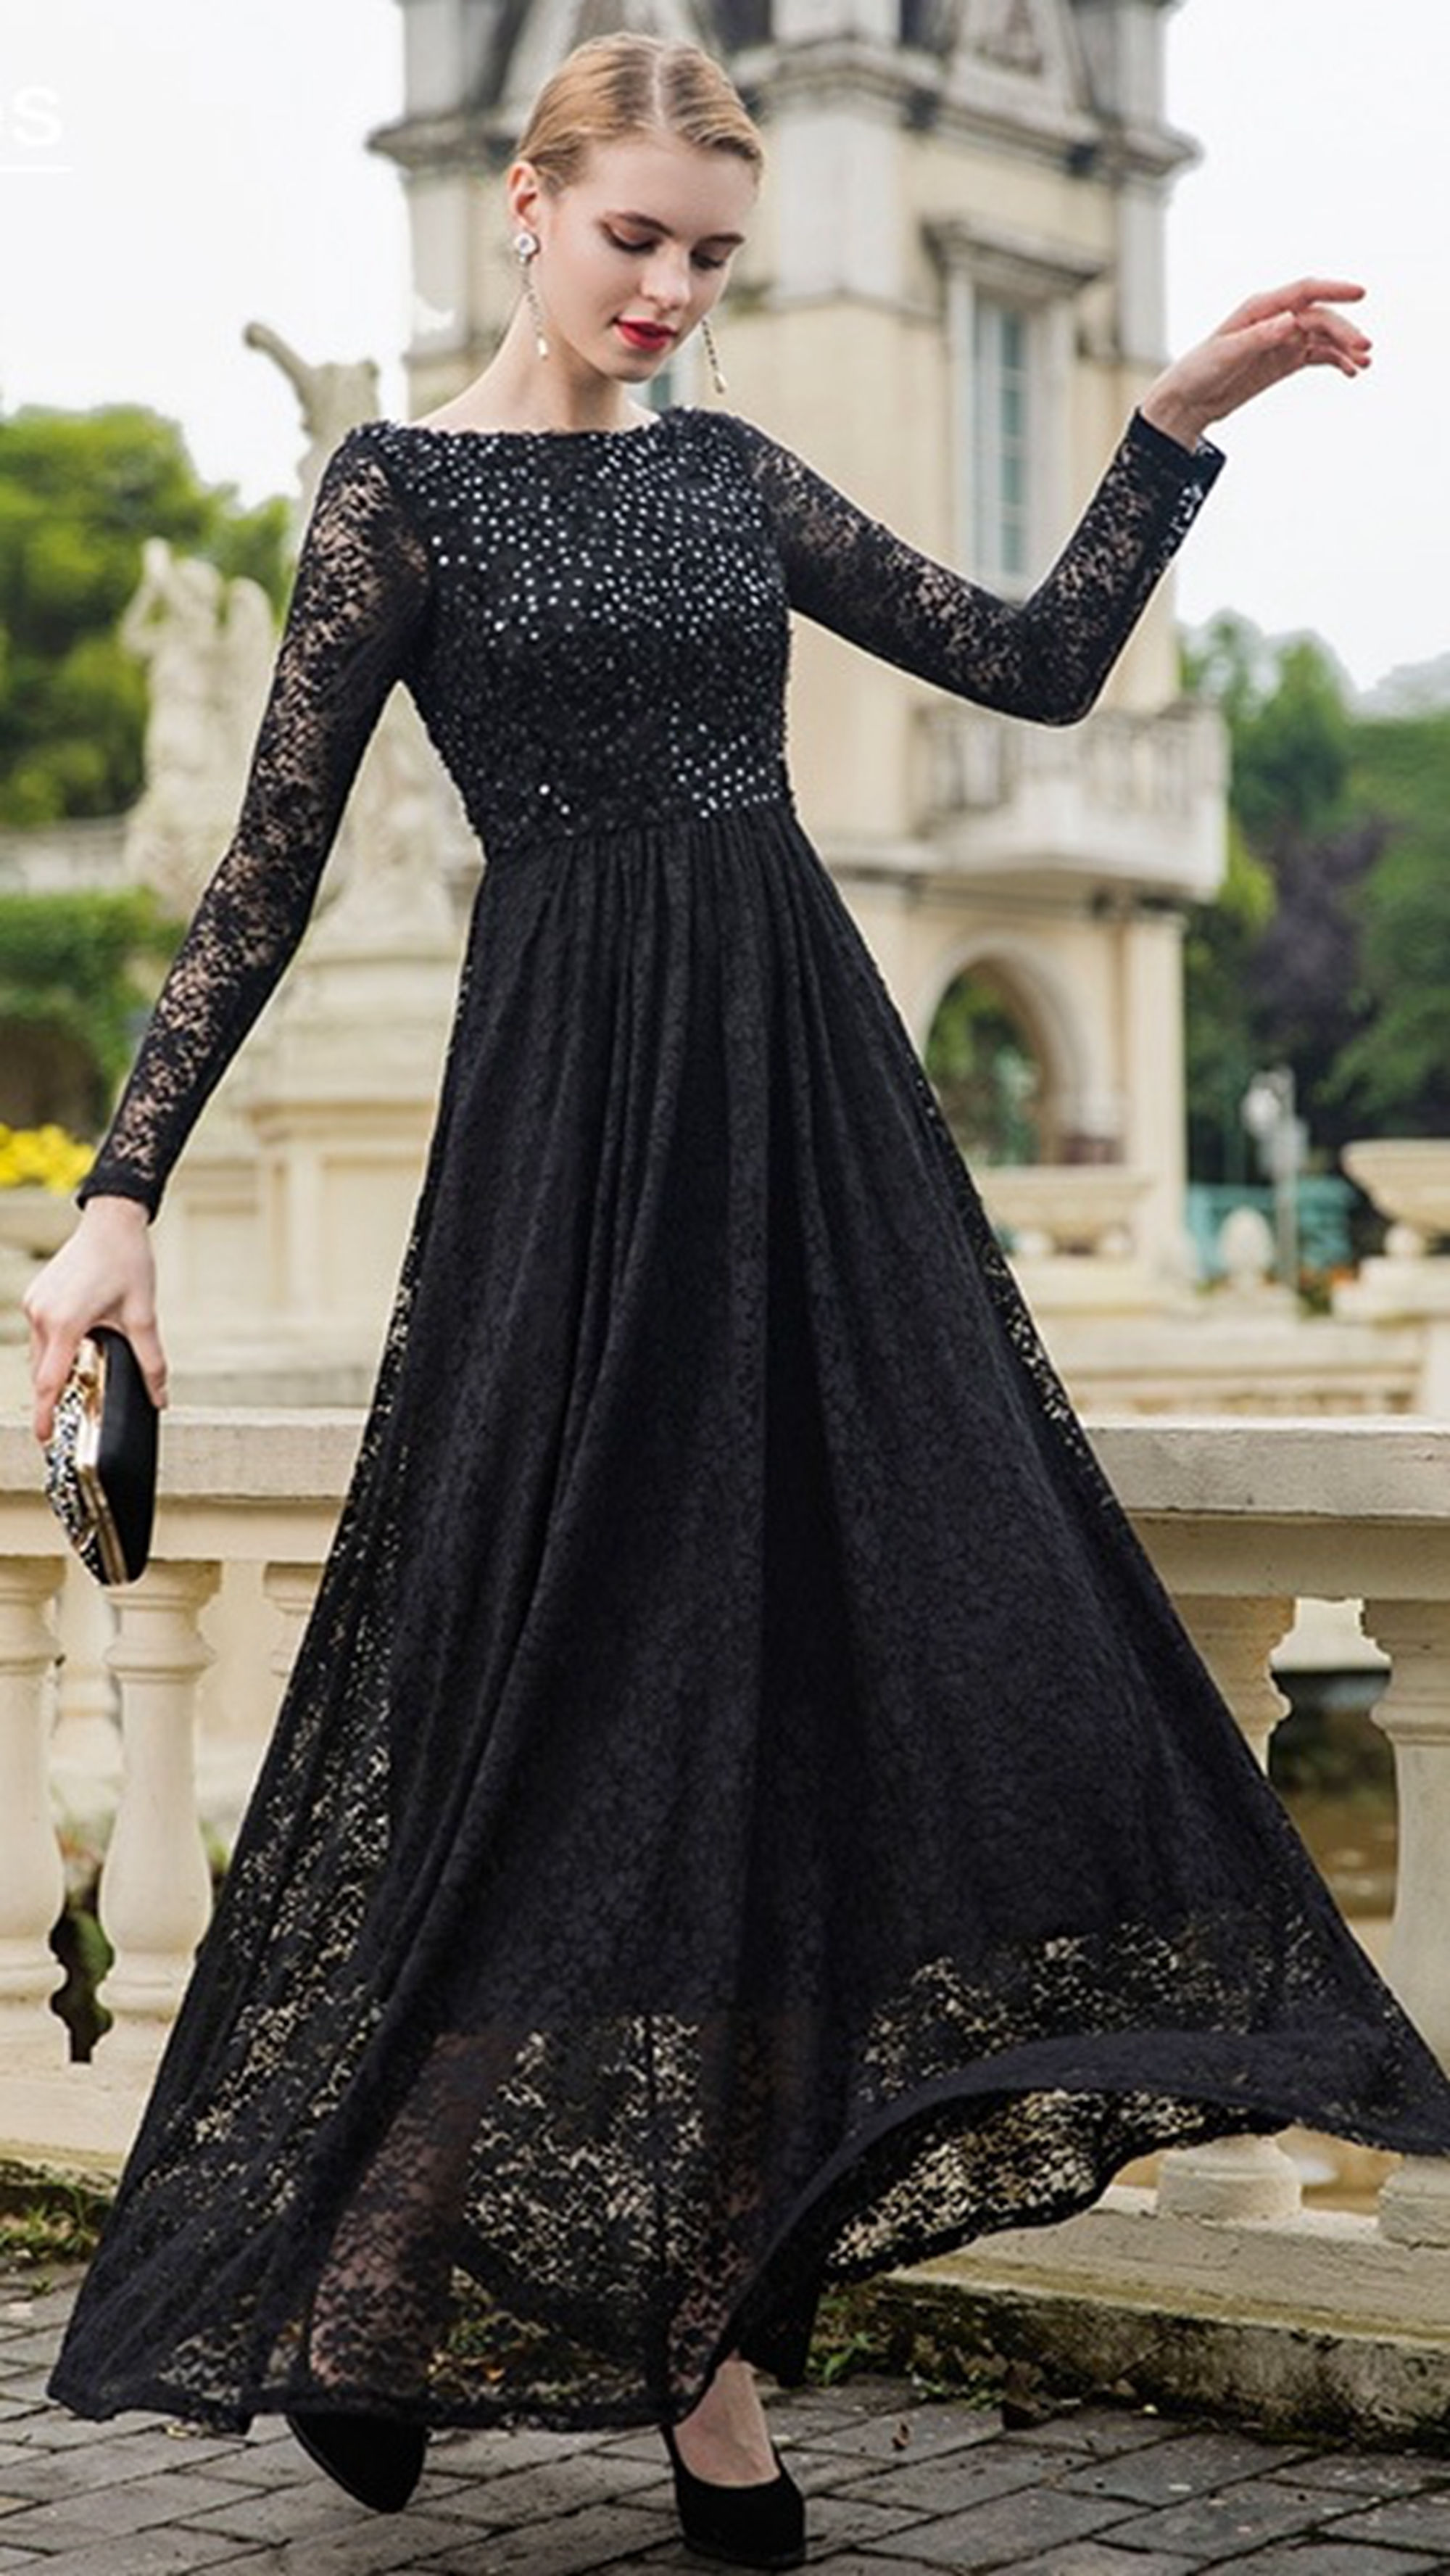 夏新款黑色亮片蕾丝连衣裙,优雅迷人,提升气质